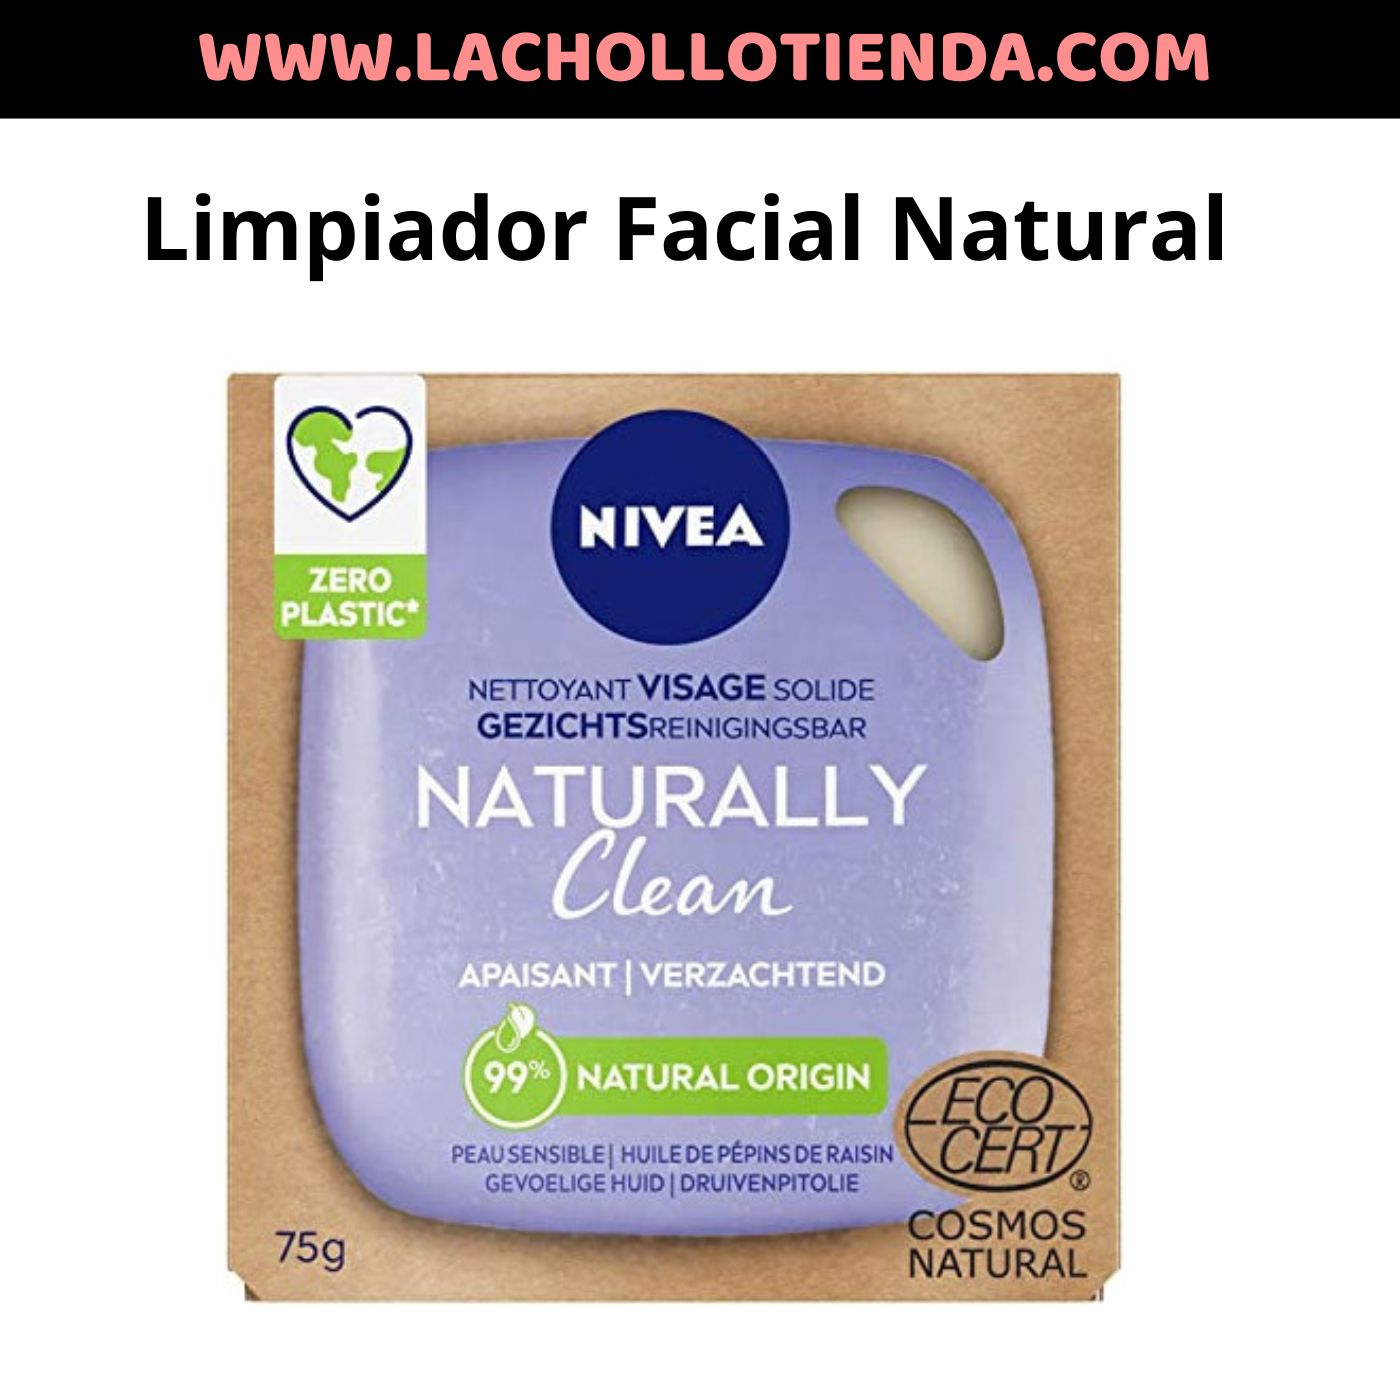 NIVEA - Nuestra Nivea Leche Limpiadora Facial Refrescante te brinda la  oportunidad de eliminar los rastros de maquillaje de manera fácil.  #NiveaVenezuela